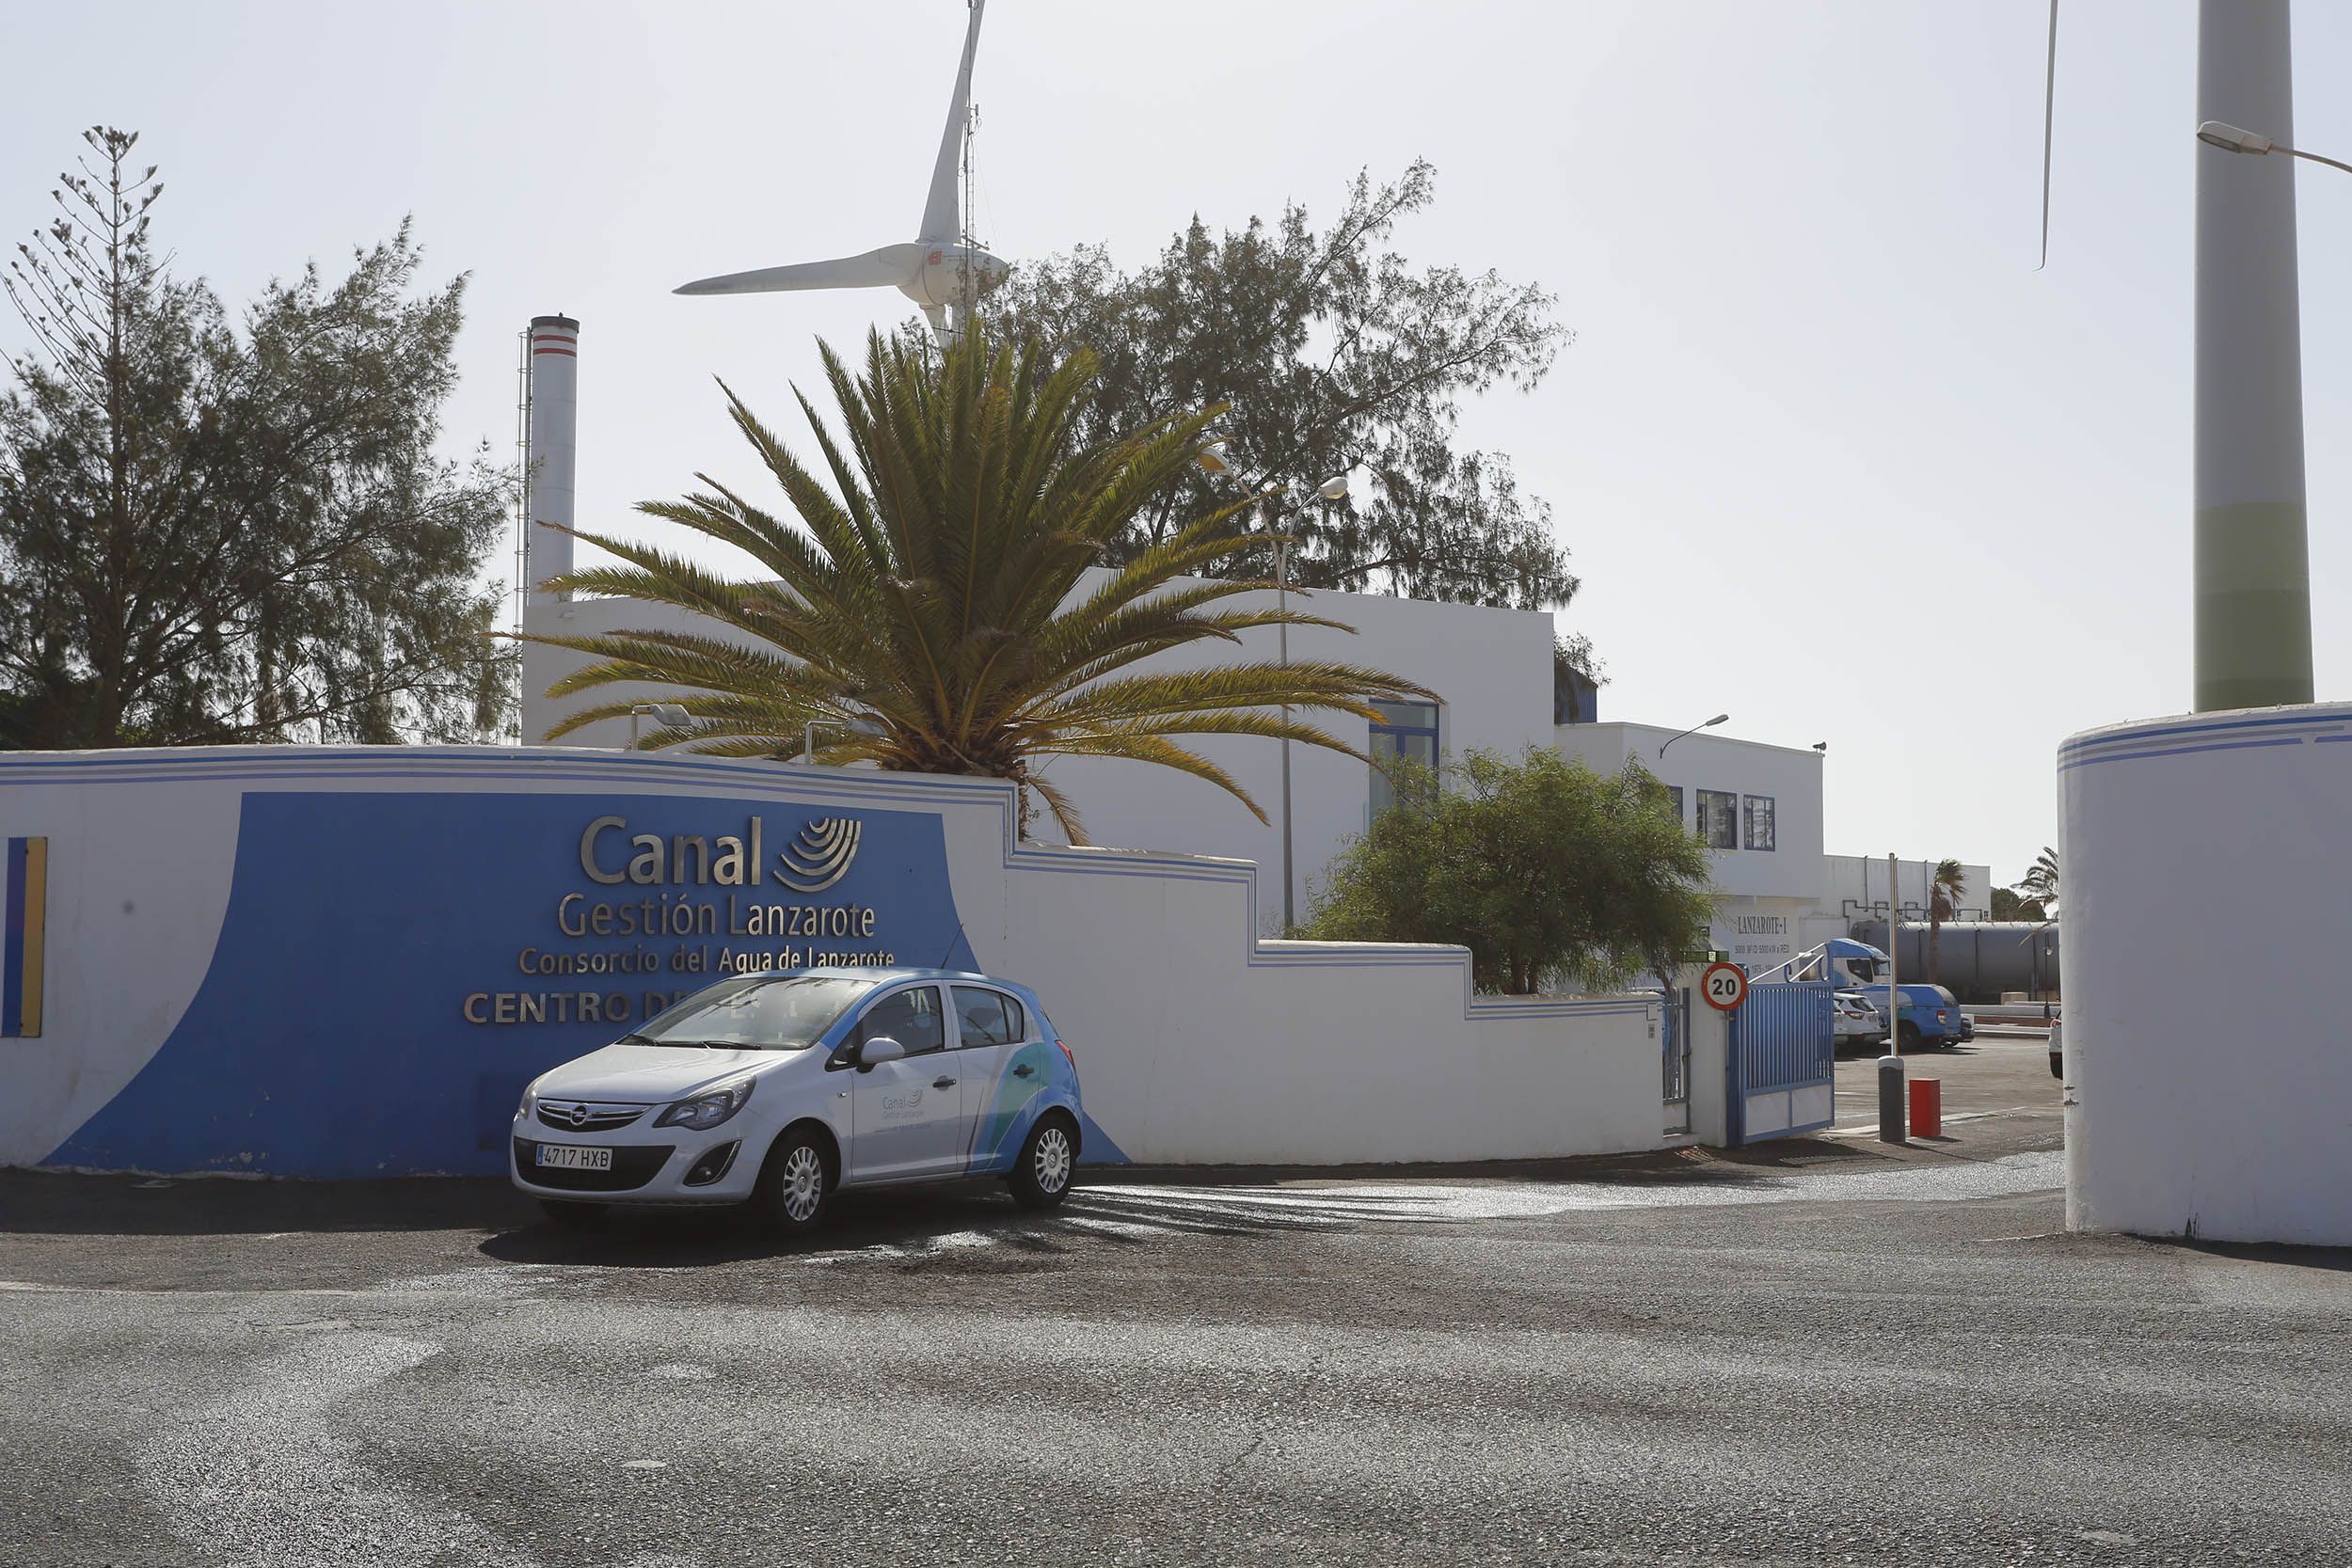 Oficina de Canal Gestión, empresa encargada de la gestión del agua en Lanzarote. Foto: José Luis Carrasco.